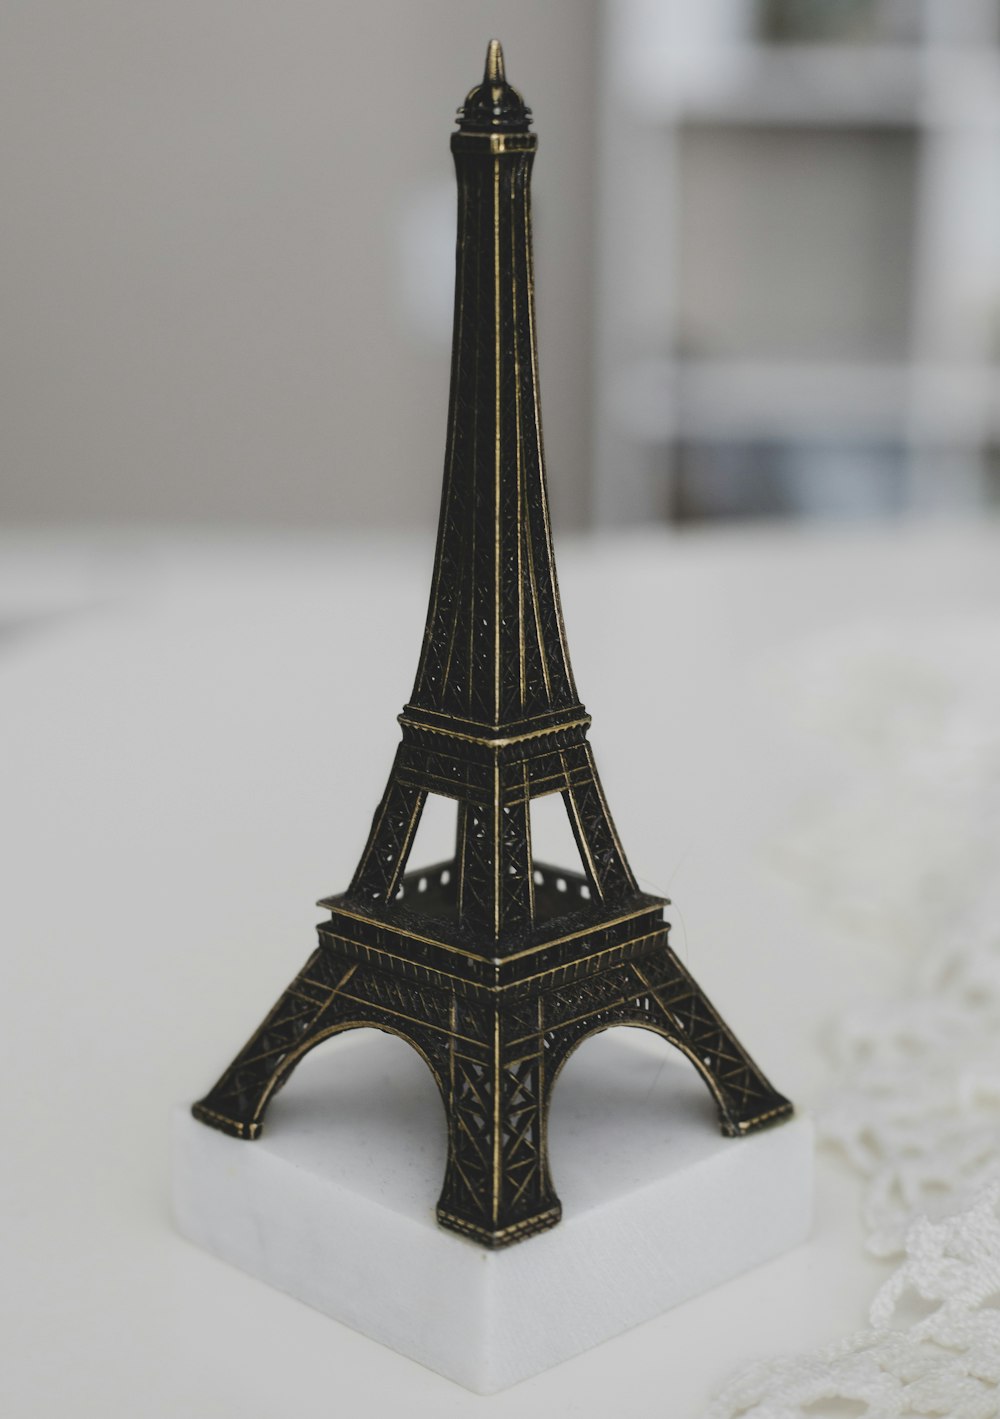 Miniature de la Tour Eiffel sur surface blanche